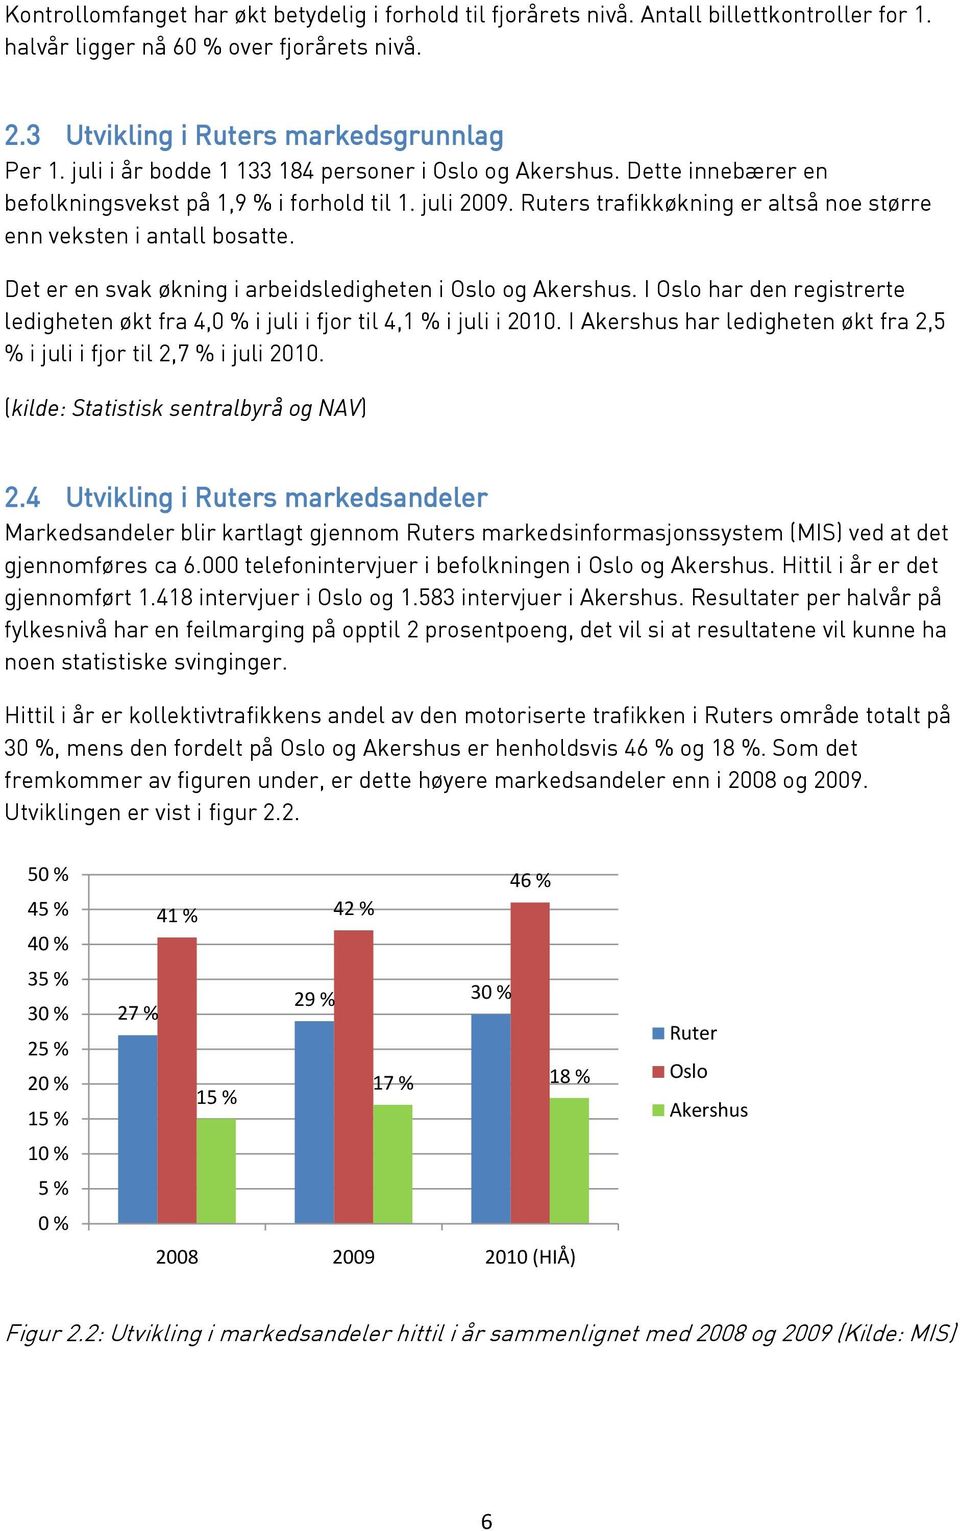 Det er en svak økning i arbeidsledigheten i Oslo og Akershus. I Oslo har den registrerte ledigheten økt fra 4,0 % i juli i fjor til 4,1 % i juli i 2010.